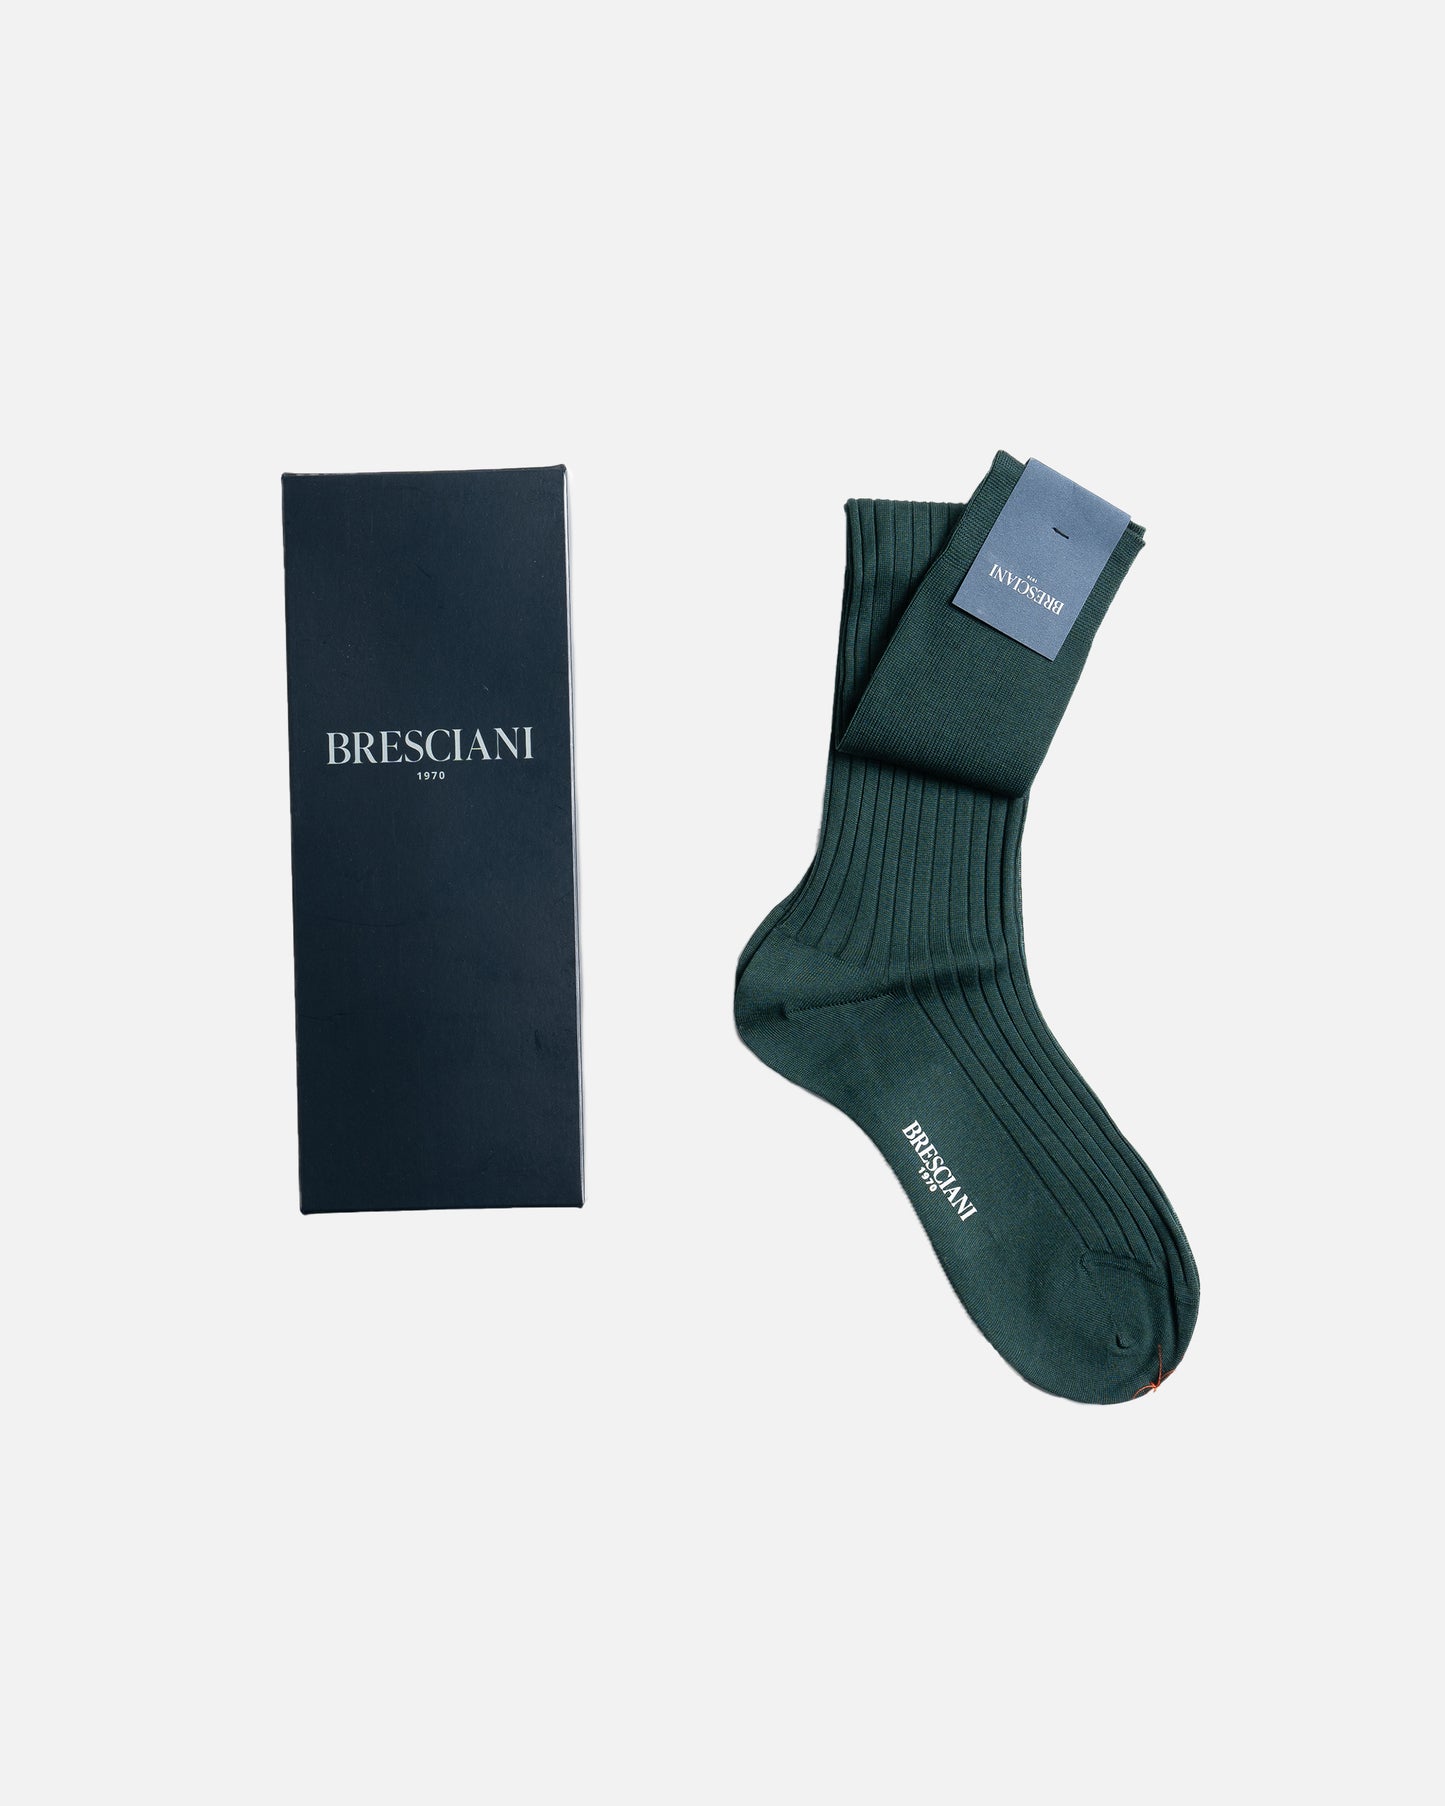 Bresciani 015 Verdone Ribbed Over The Calf Cotton socks